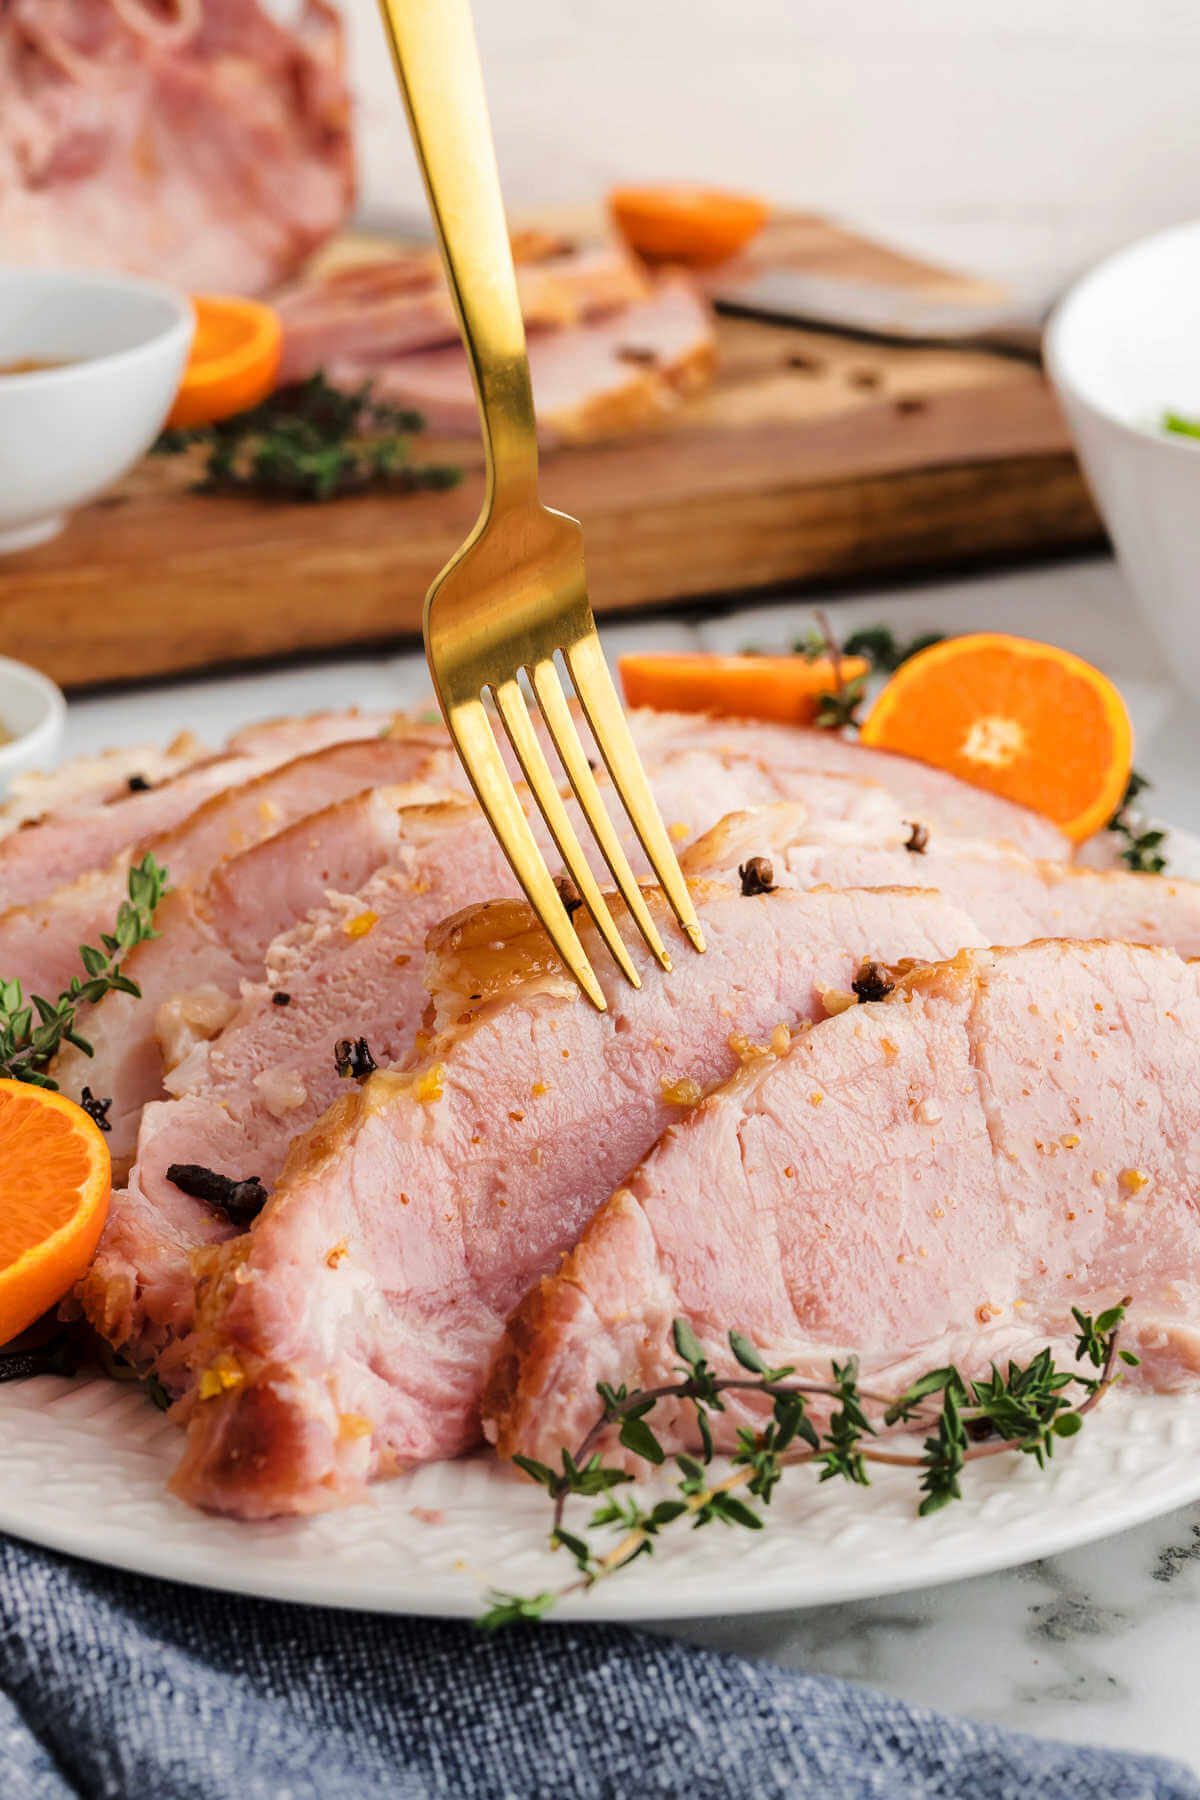 a fork piercing a slice of orange glazed ham.